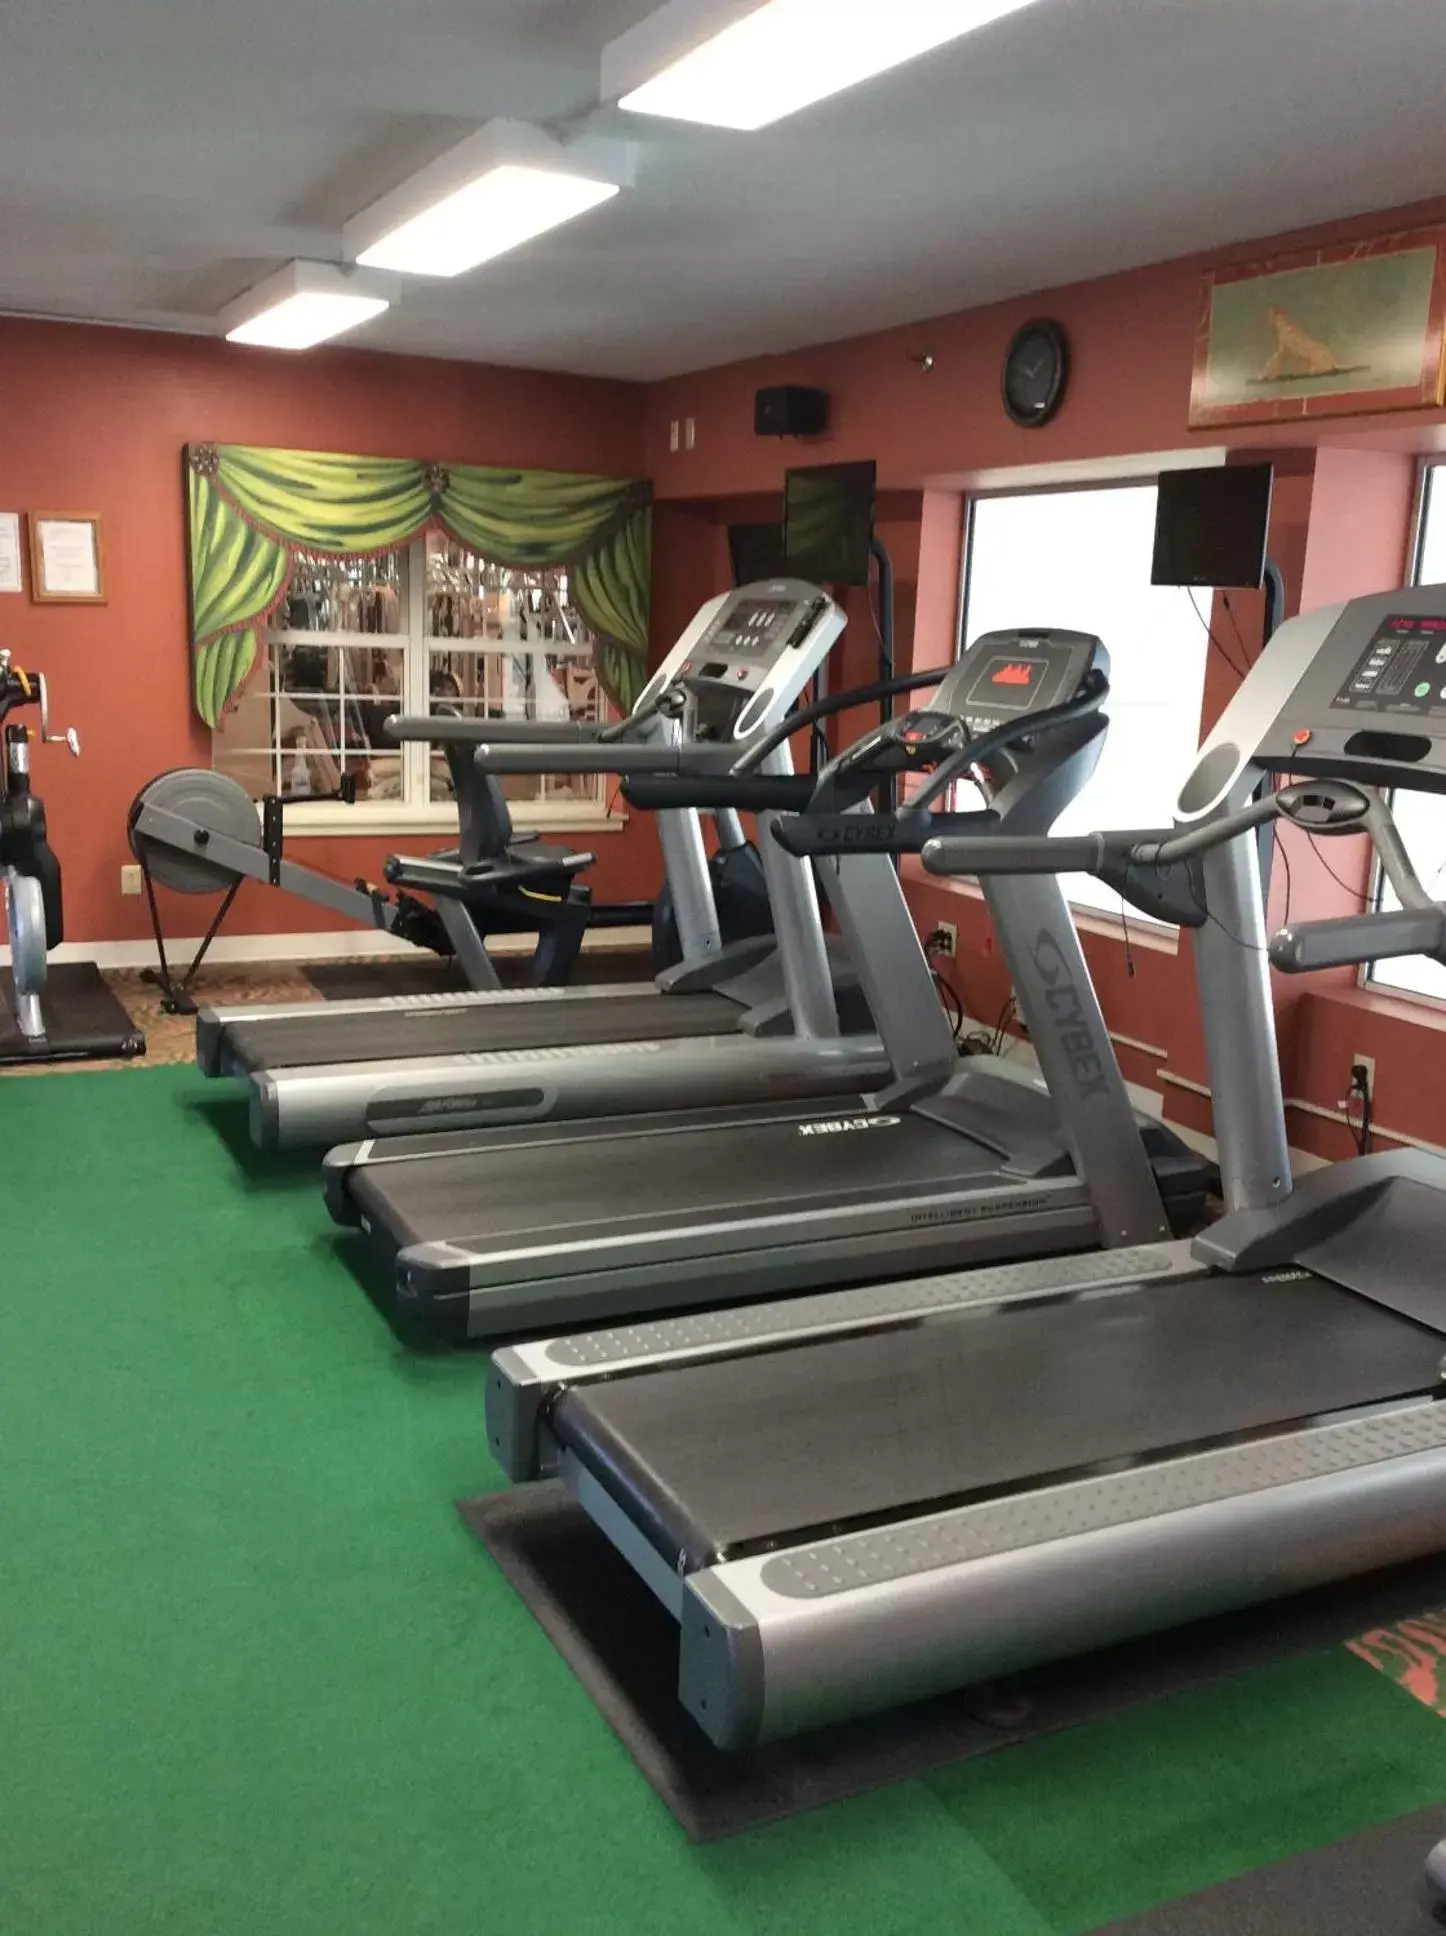 Fitness centre/facilities, Fitness Center/Facilities in Senator Inn & Spa